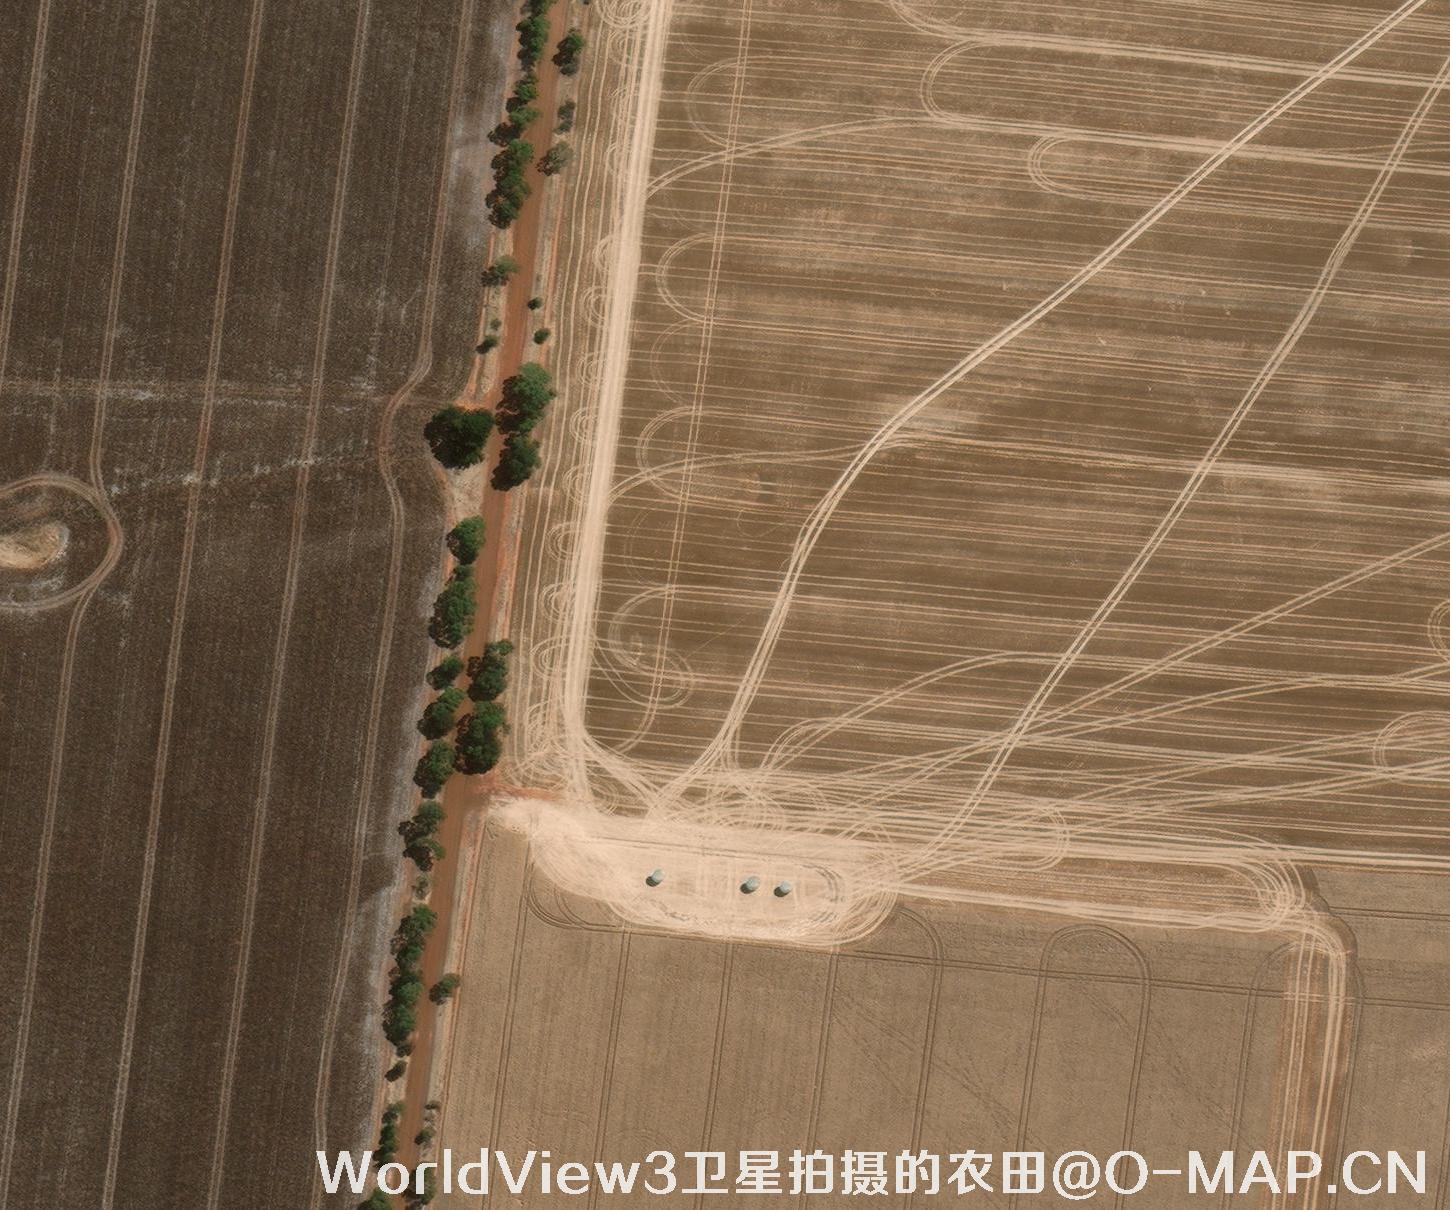 北京海淀区0.3米卫星图样例-WorldView3卫星图